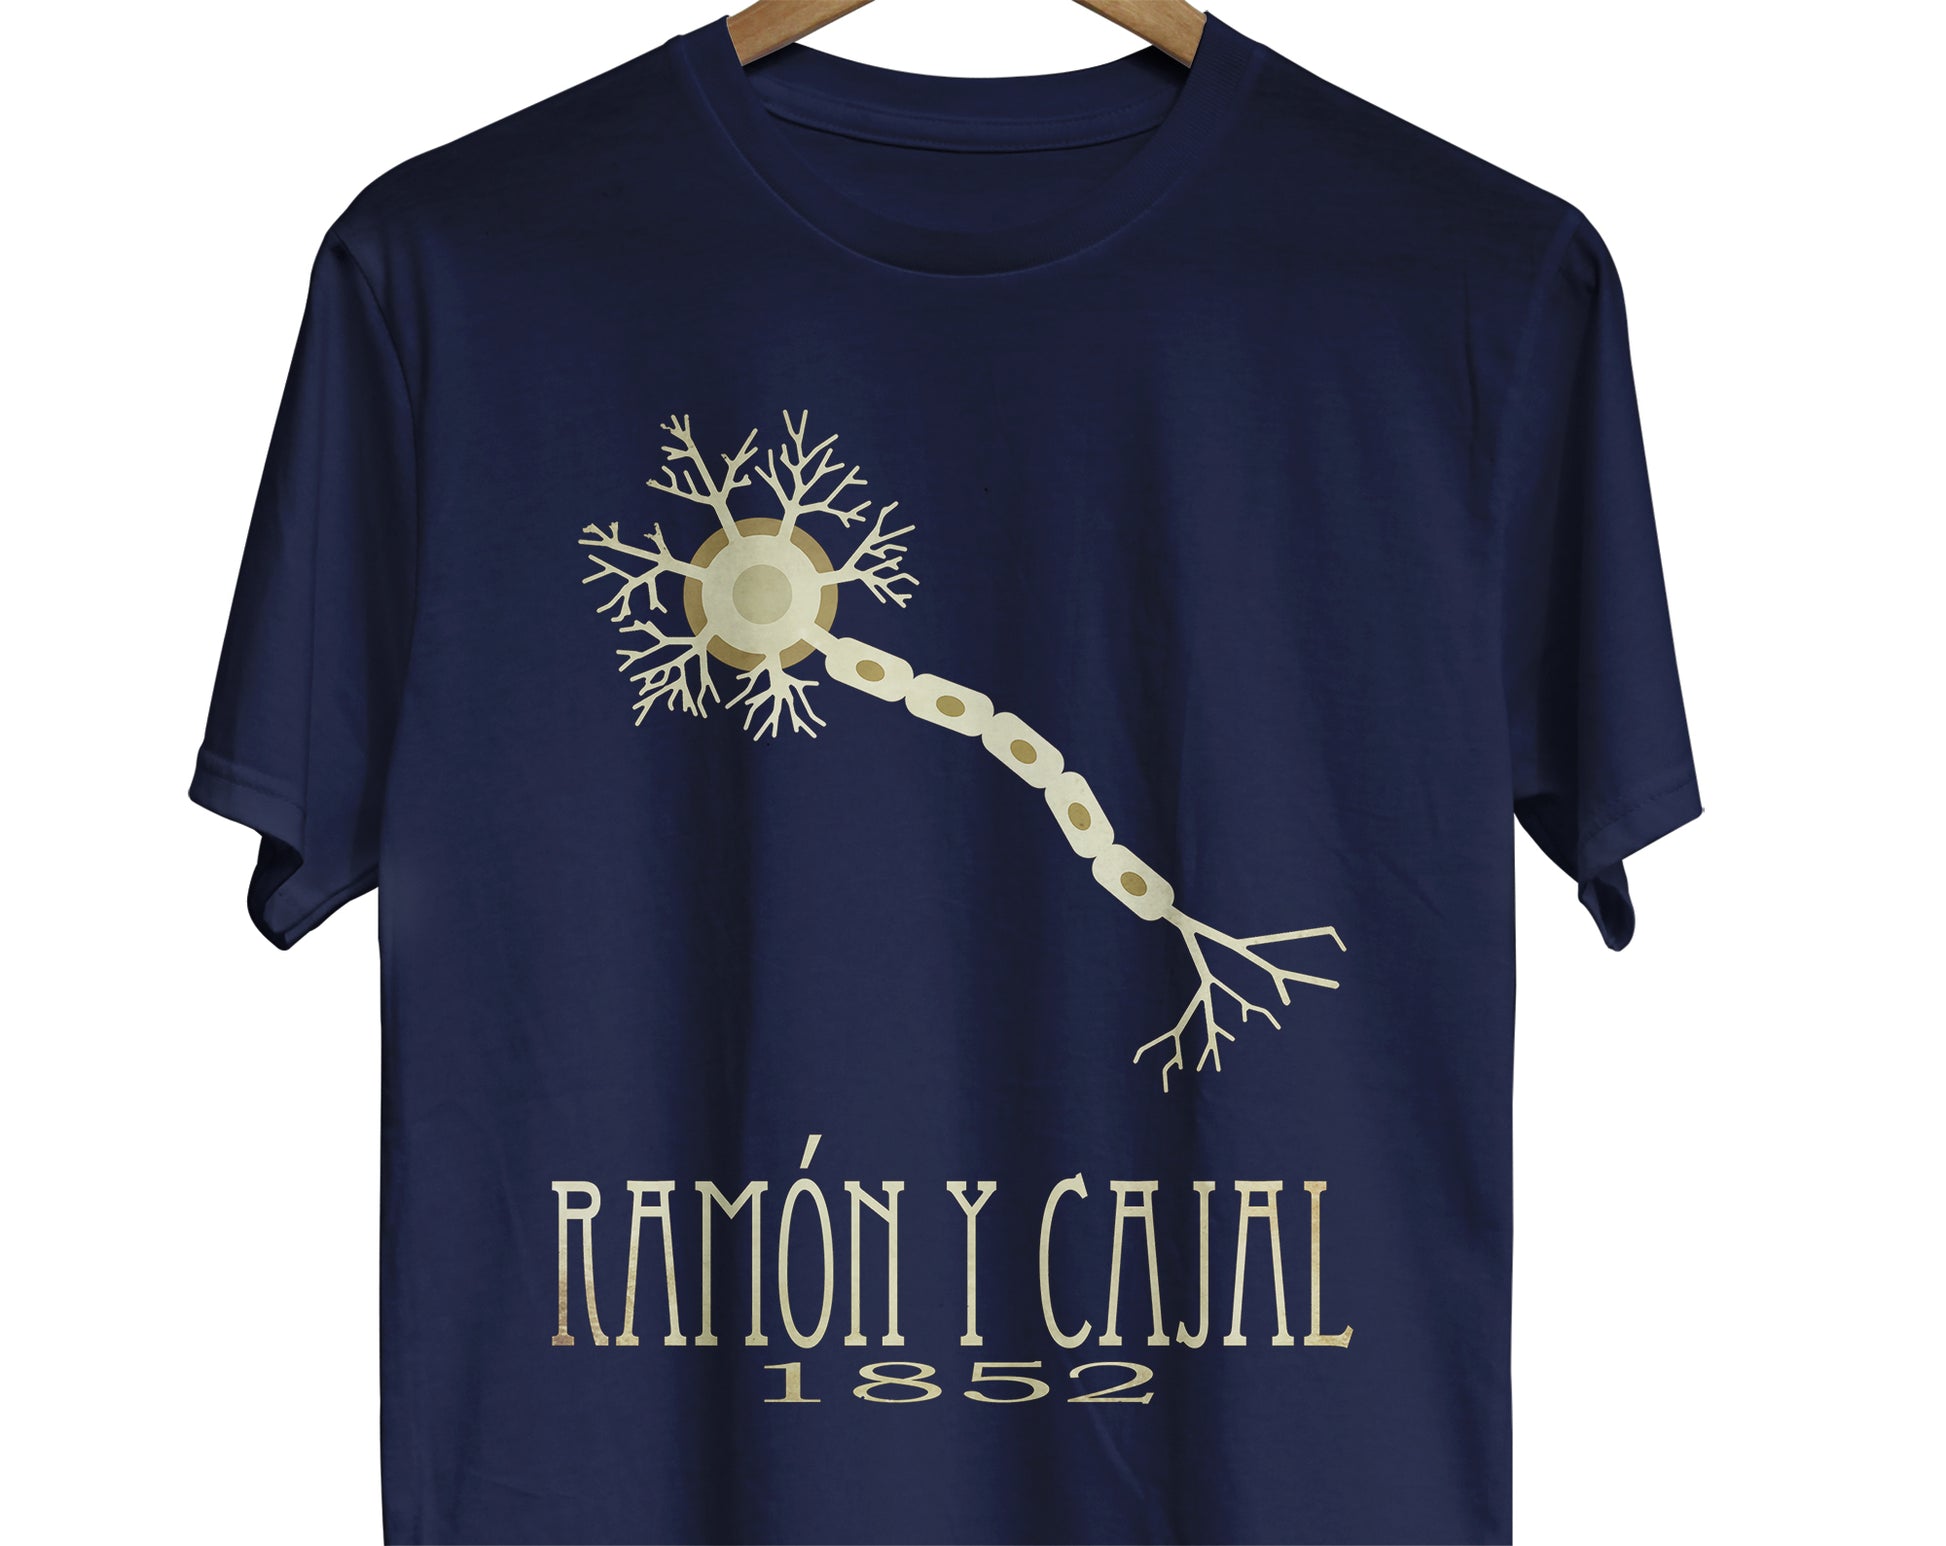 Santiago Ramón y Cajal neuroscience t-shirt with brain neuron design for scientist or science teacher